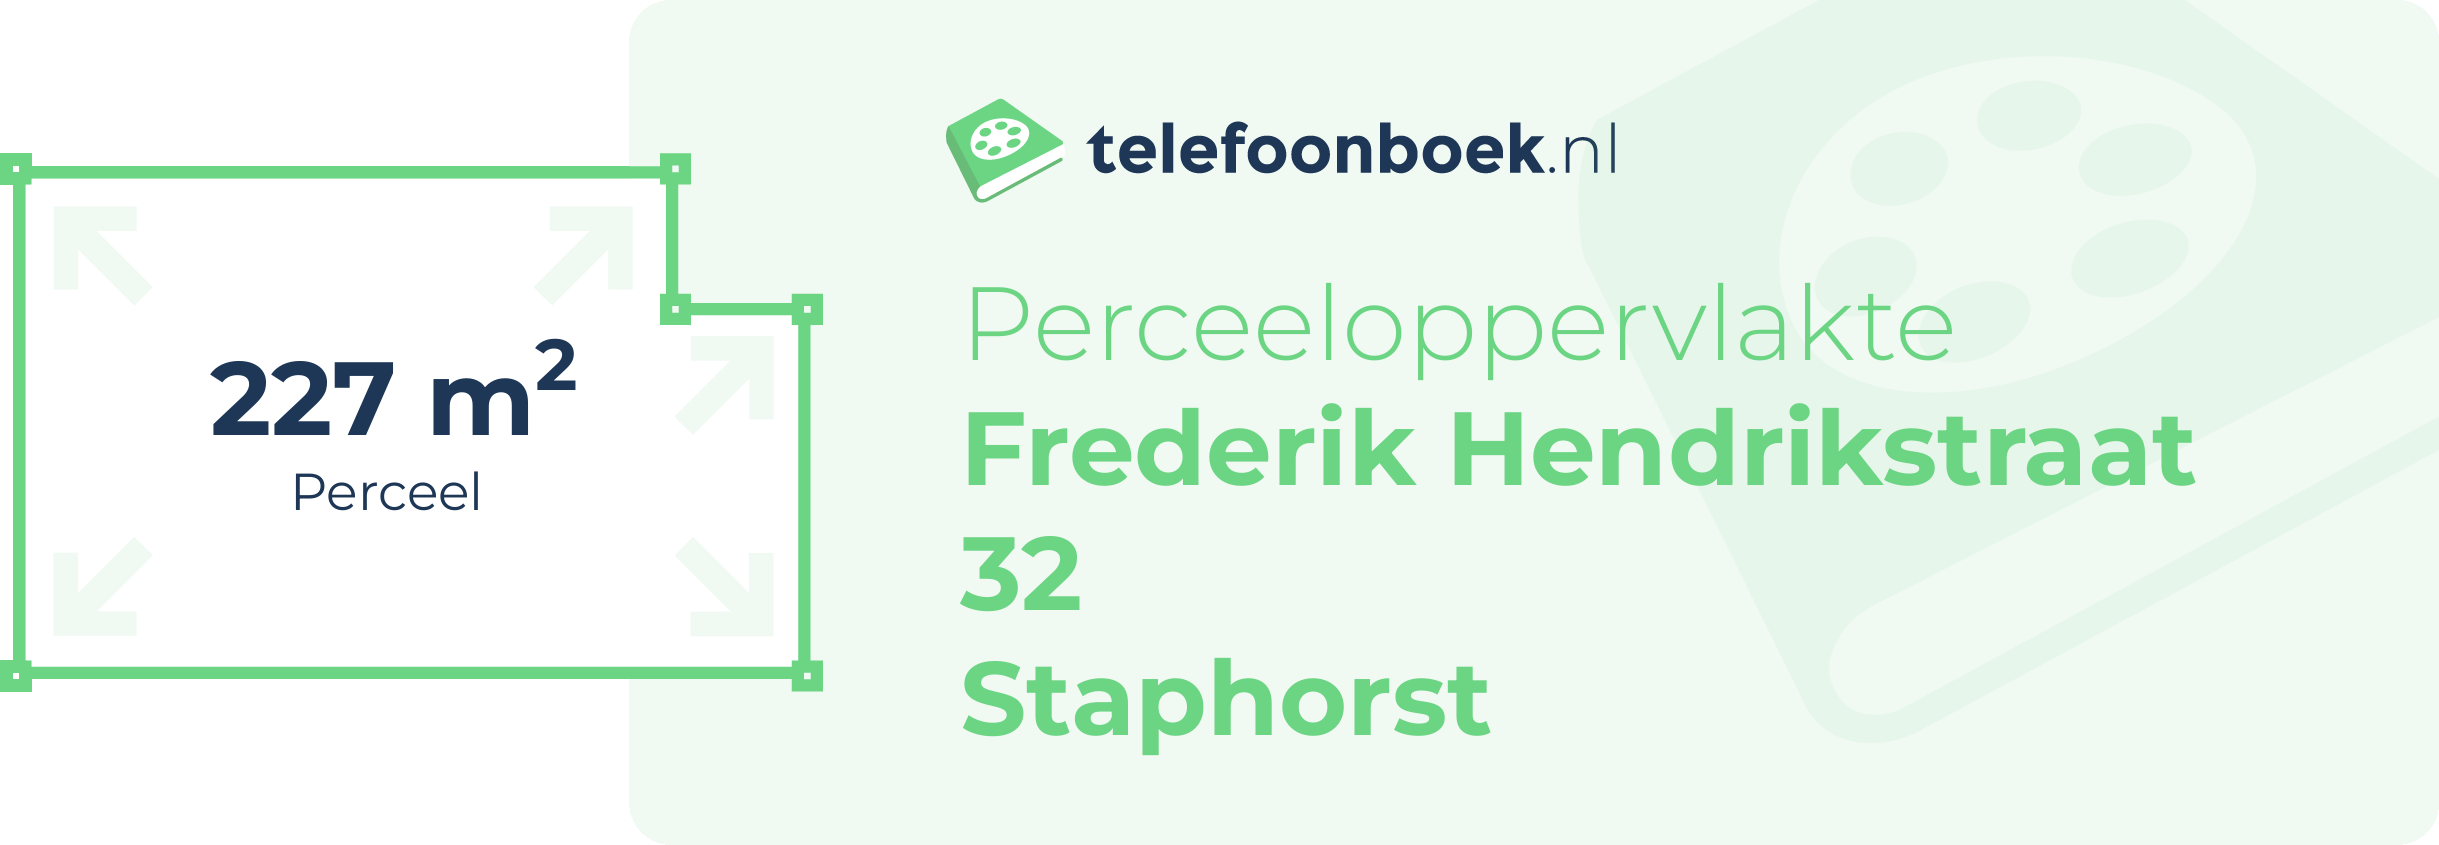 Perceeloppervlakte Frederik Hendrikstraat 32 Staphorst